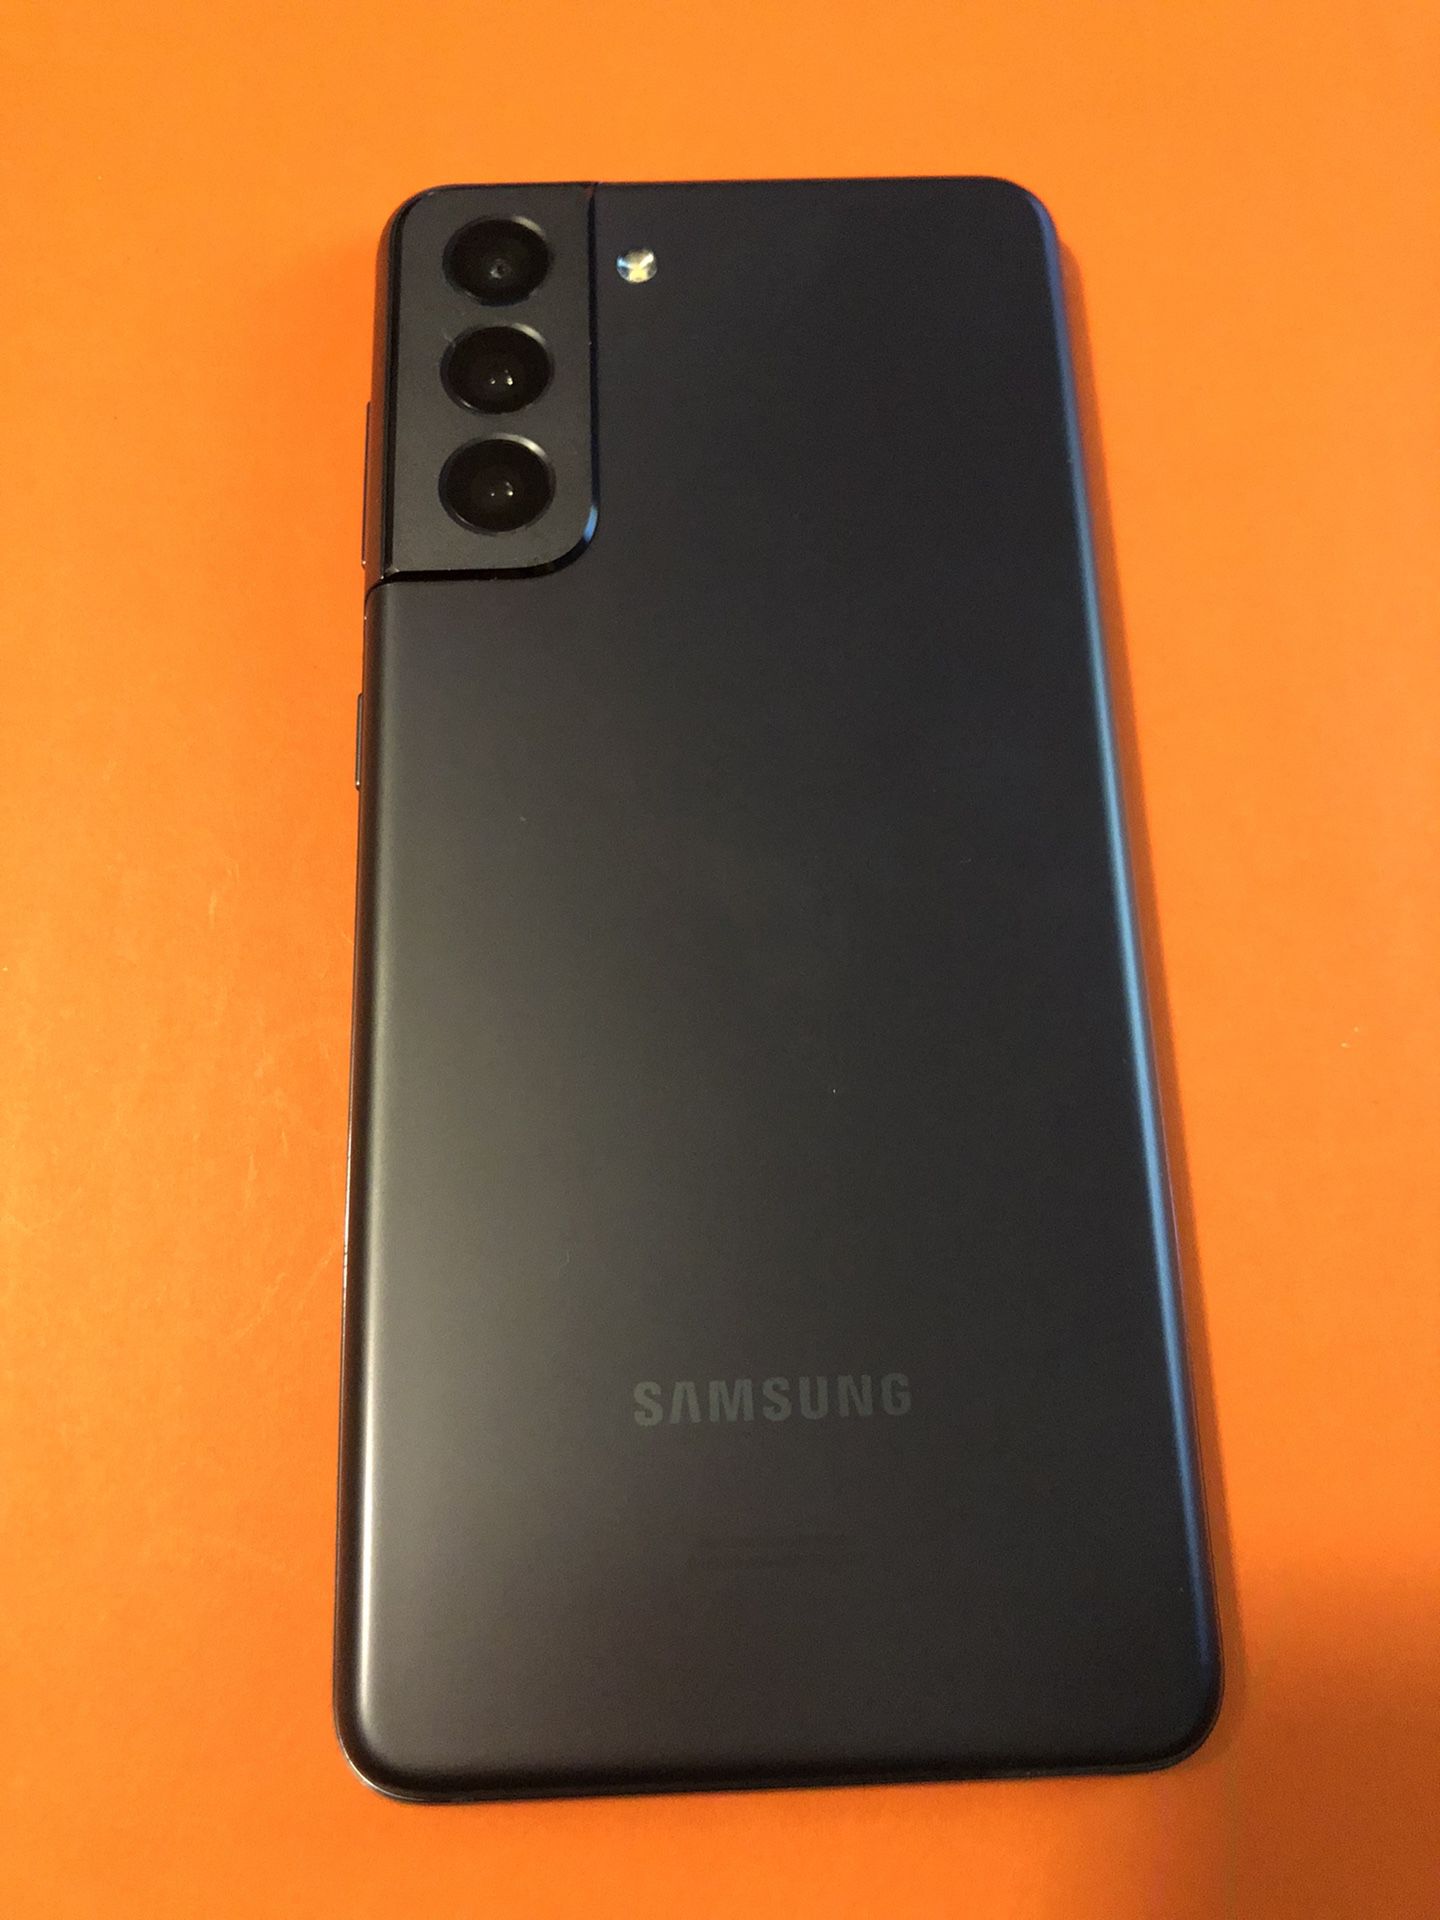 Samsung Galaxy S21 “JUST VERIZON” 128gb Firm Price $245